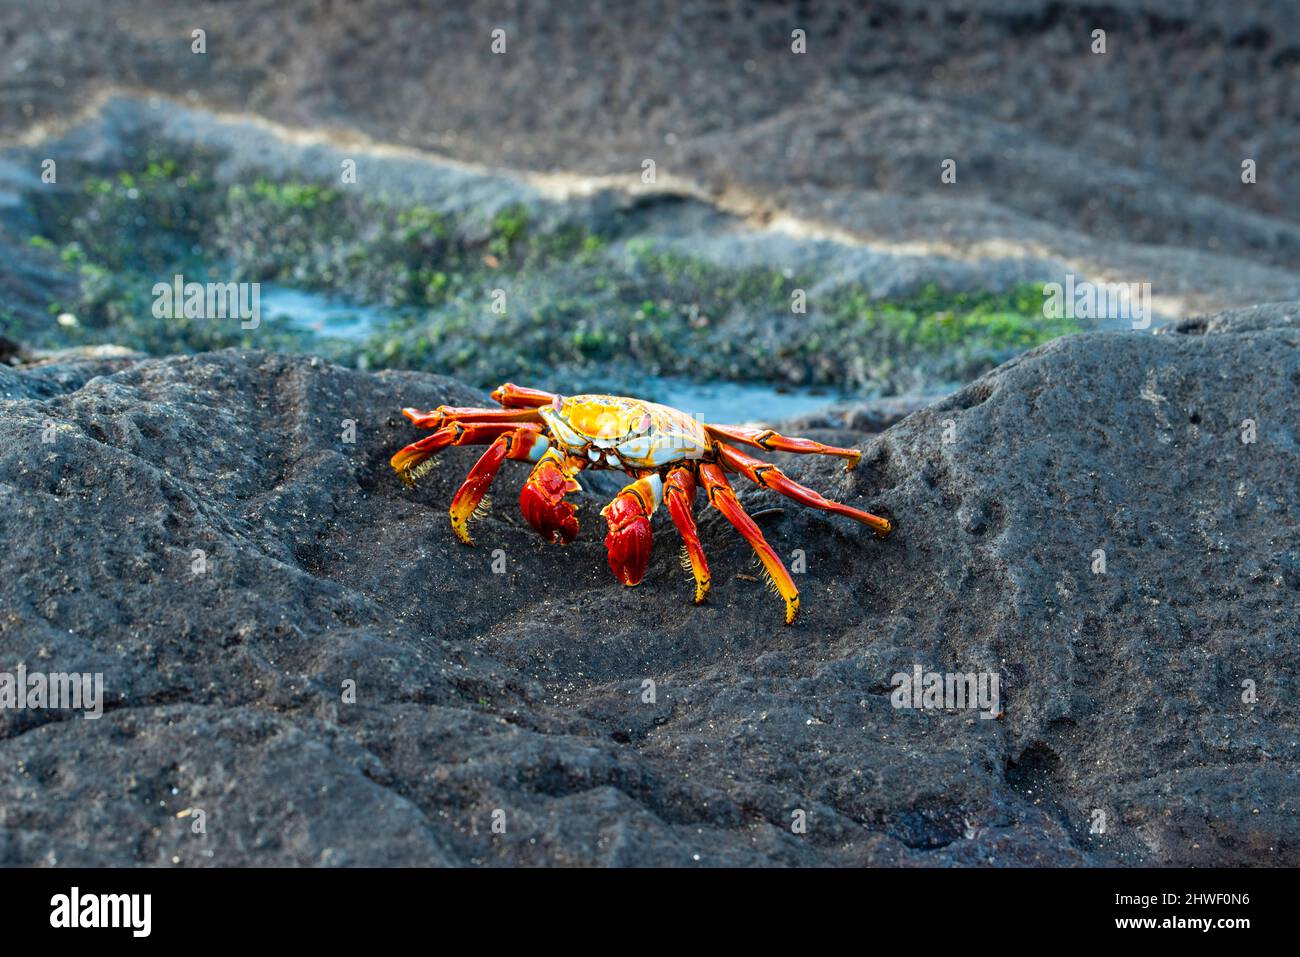 Photograph of Sally Lightfoot crabs (Grapsus grapsu) at Puerto Egas, Isla Santiago, Gal‡pagos Islands, Ecuador. Stock Photo